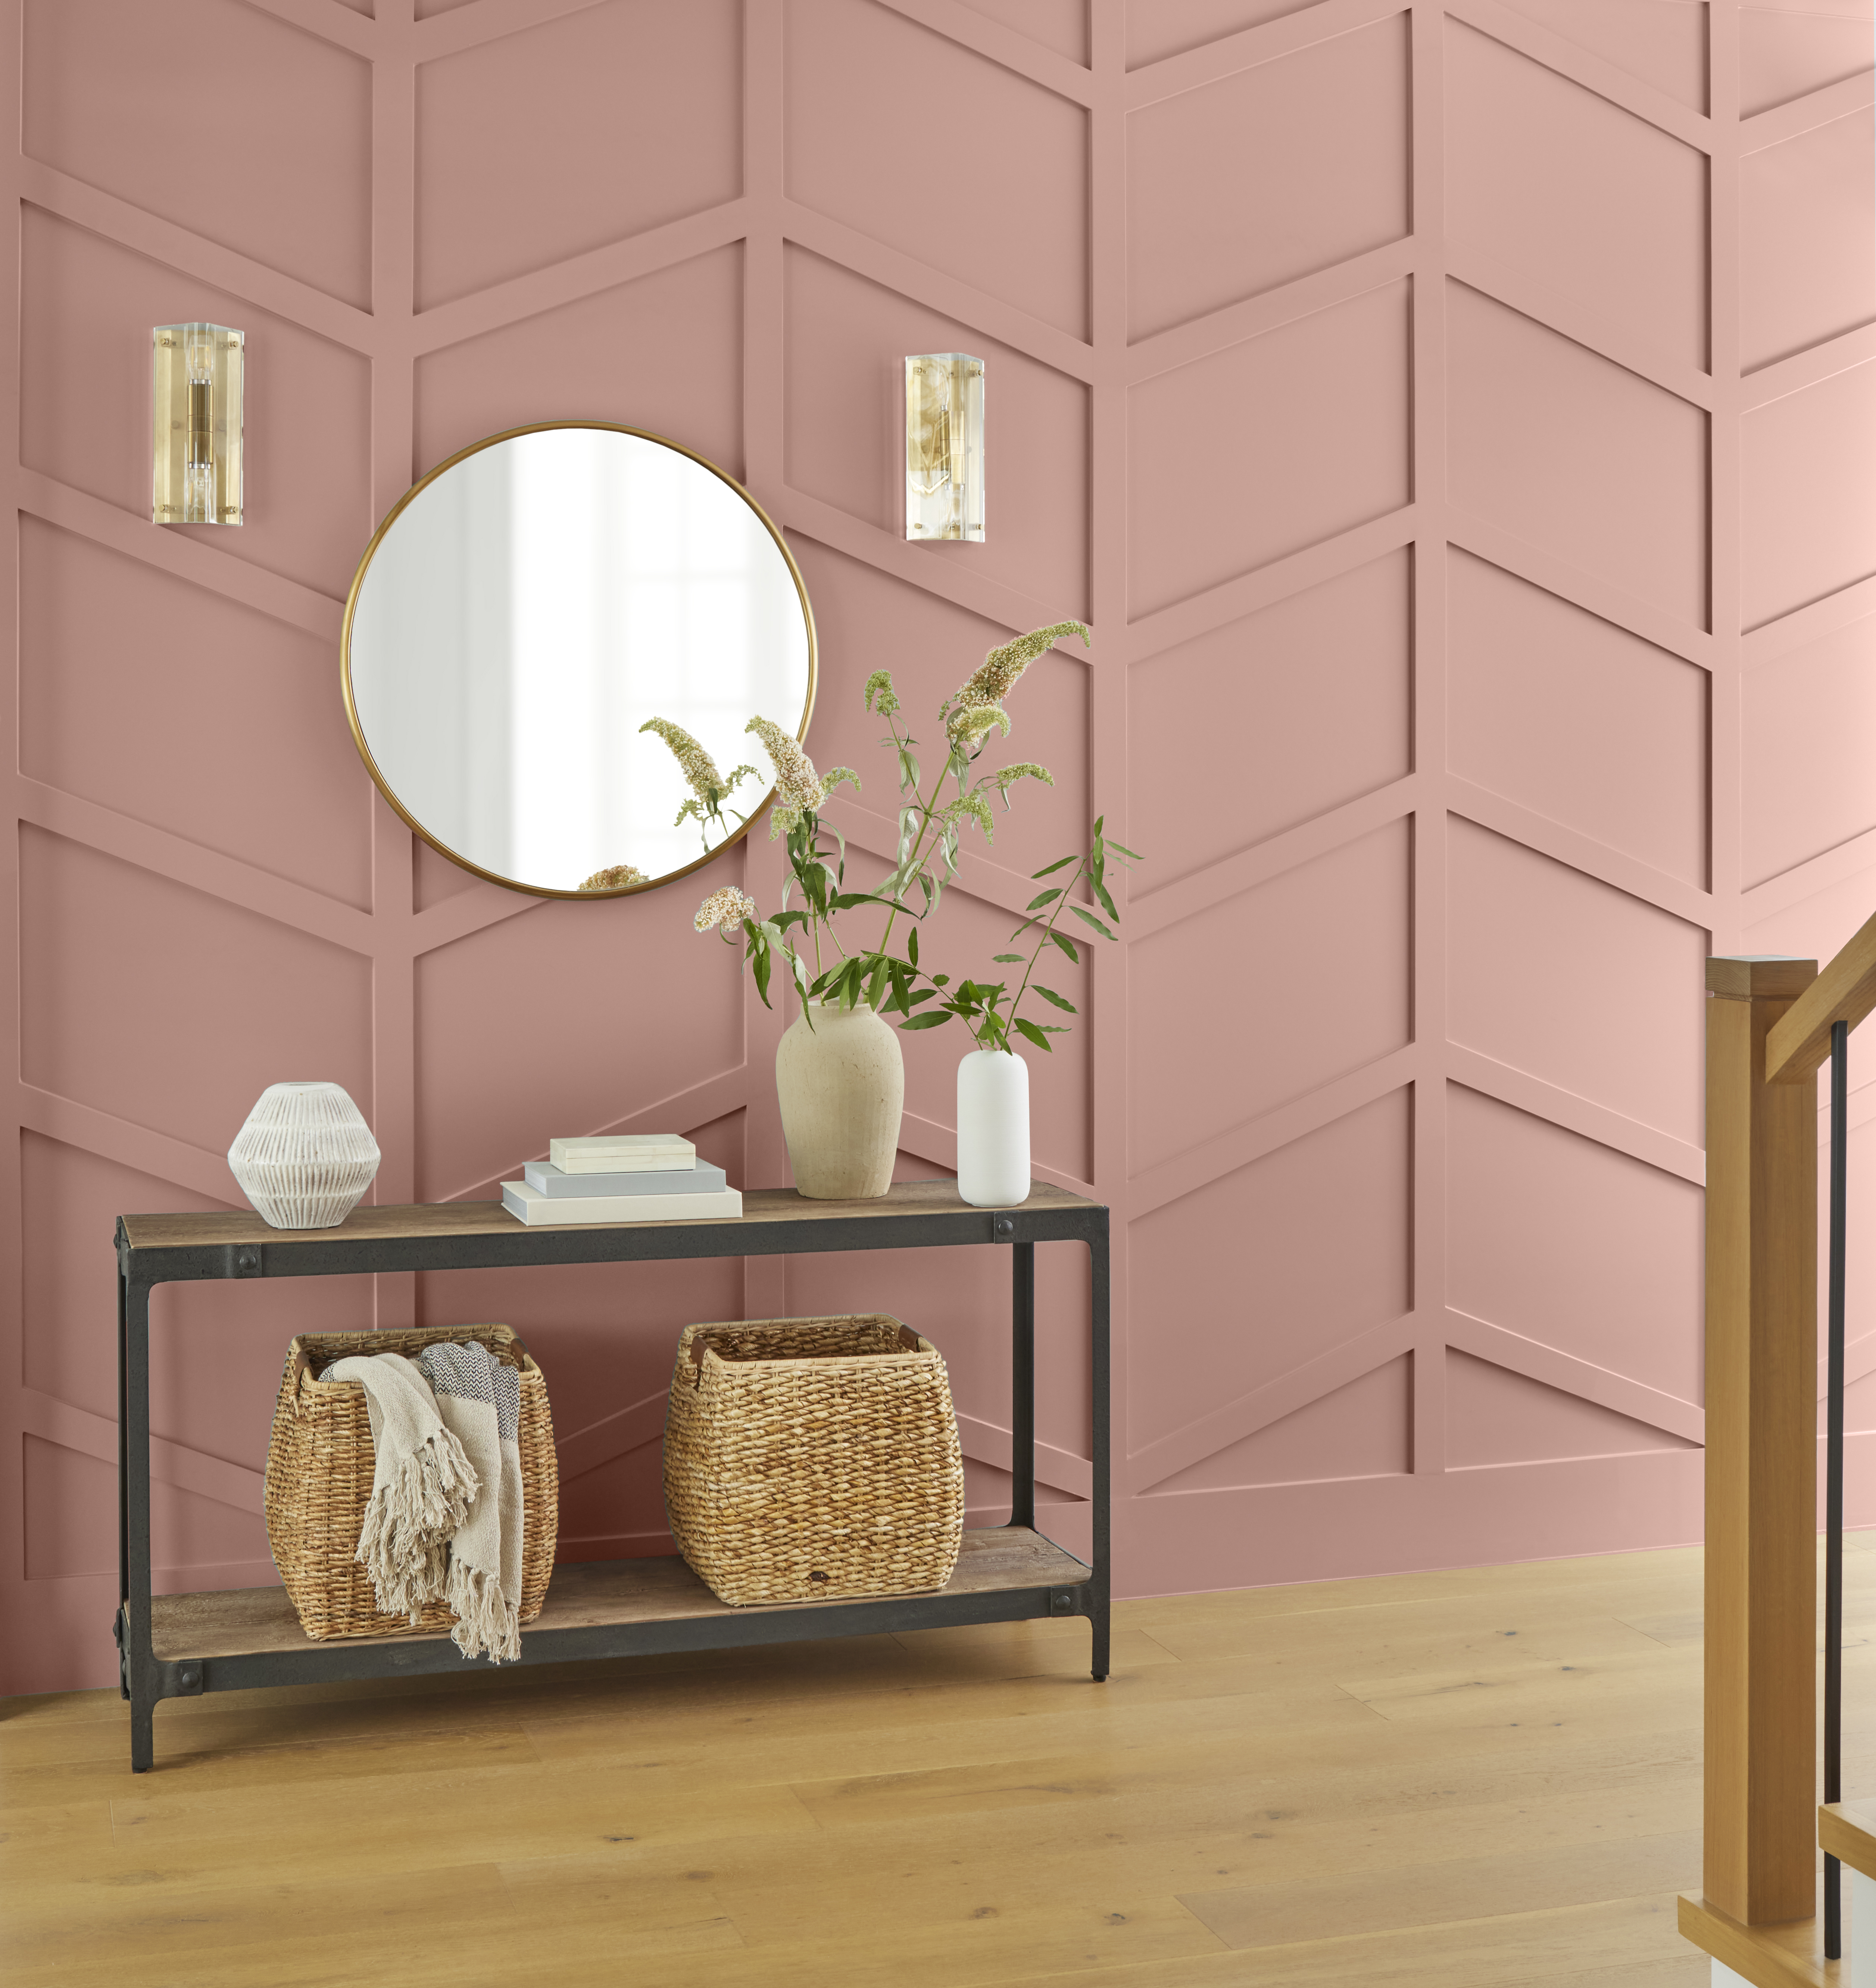 Un mur d'accent dans la couleur Rose rétro décoré d’accessoires modernes